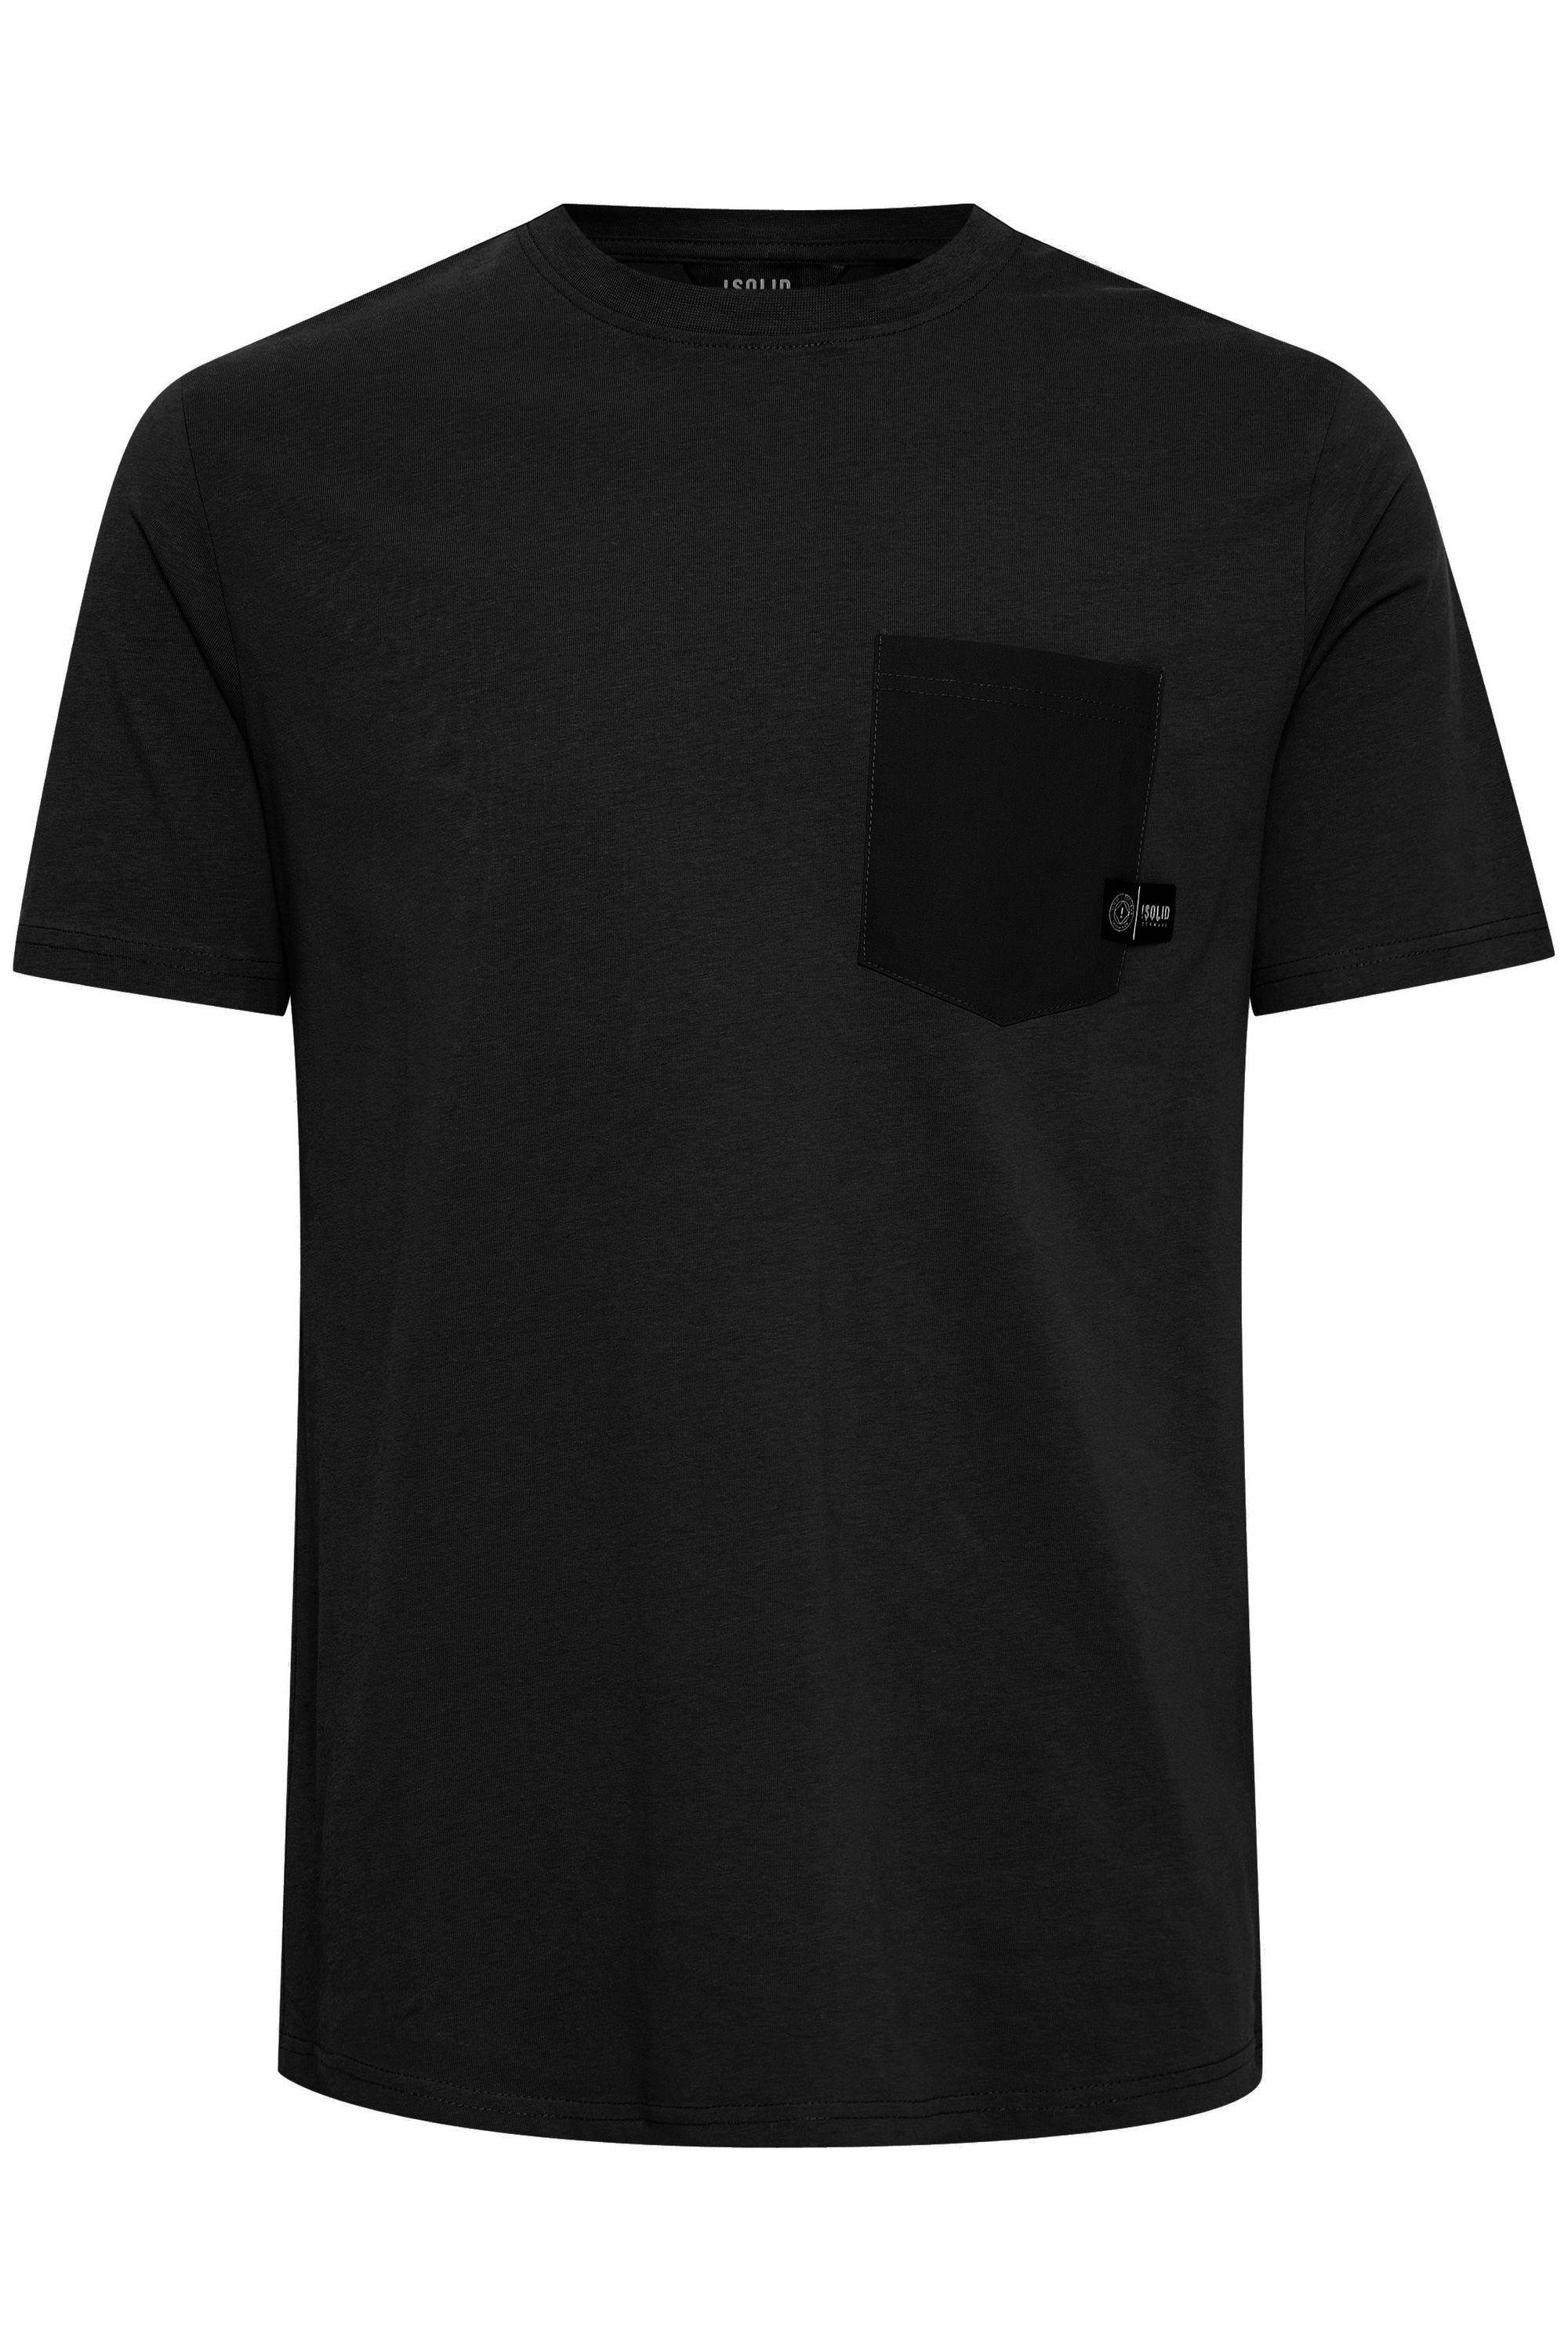 Solid T-Shirt Black SDBasto (194008) True